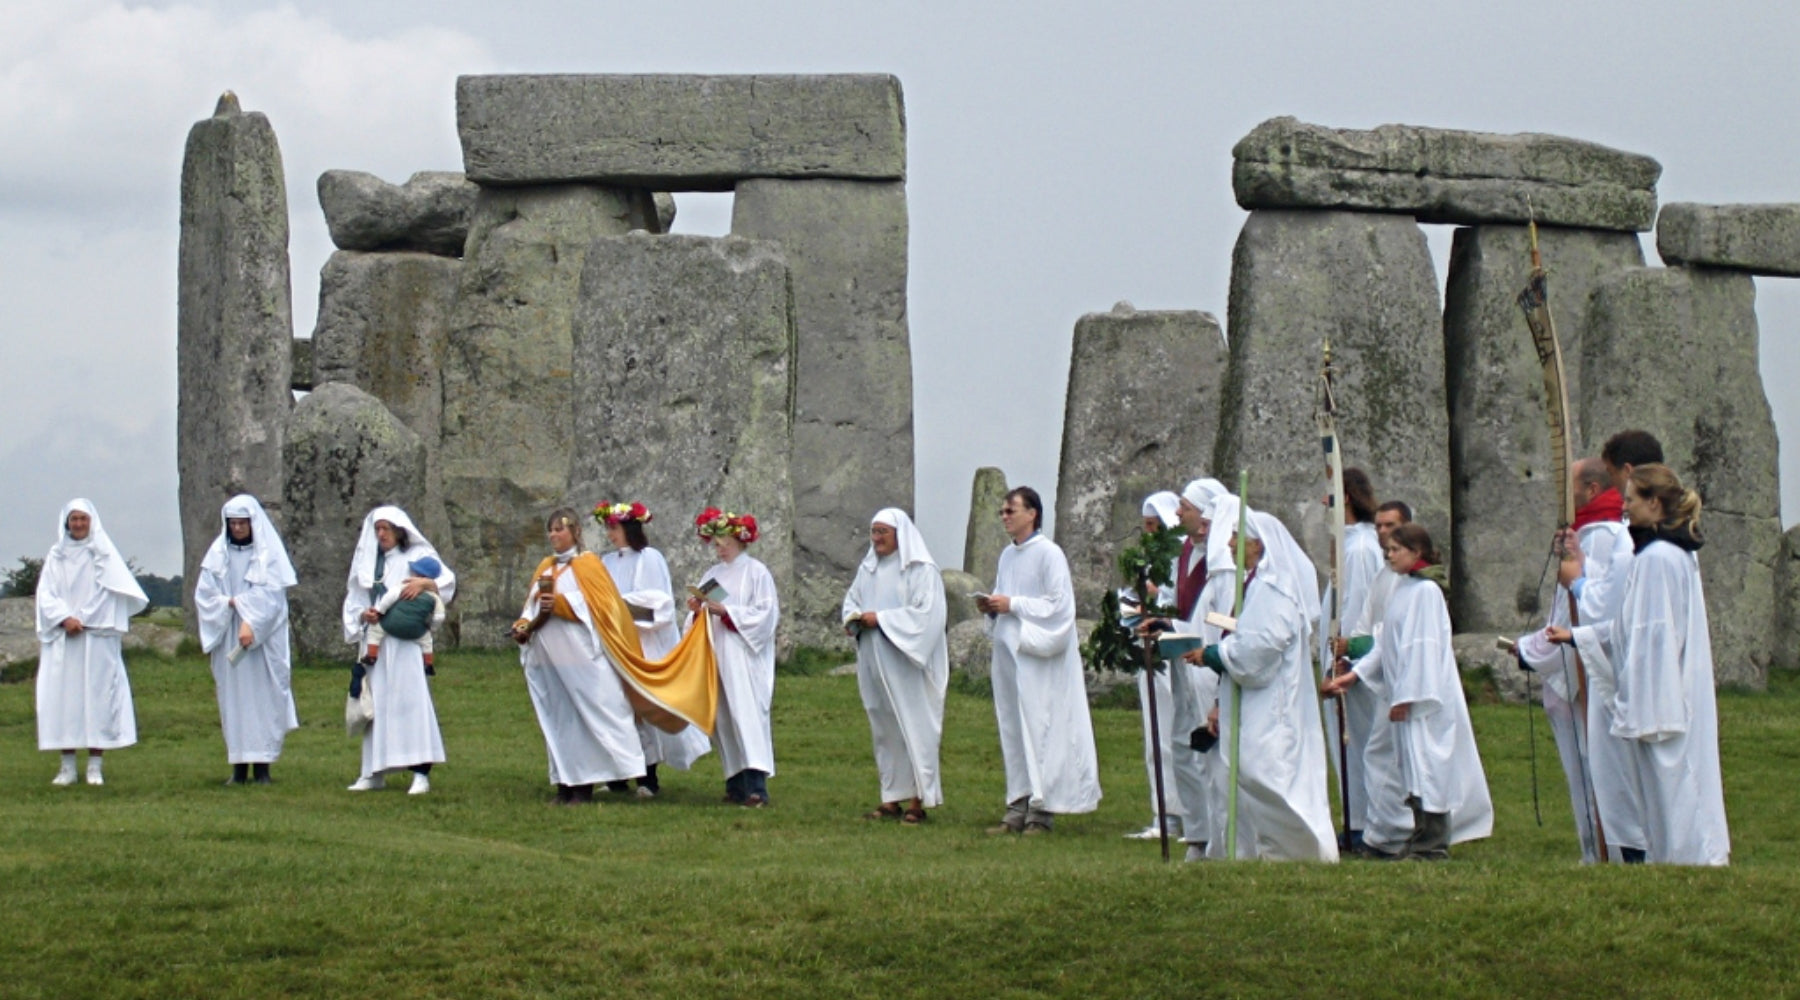 Druids celebrating solstice at Stonehenge England